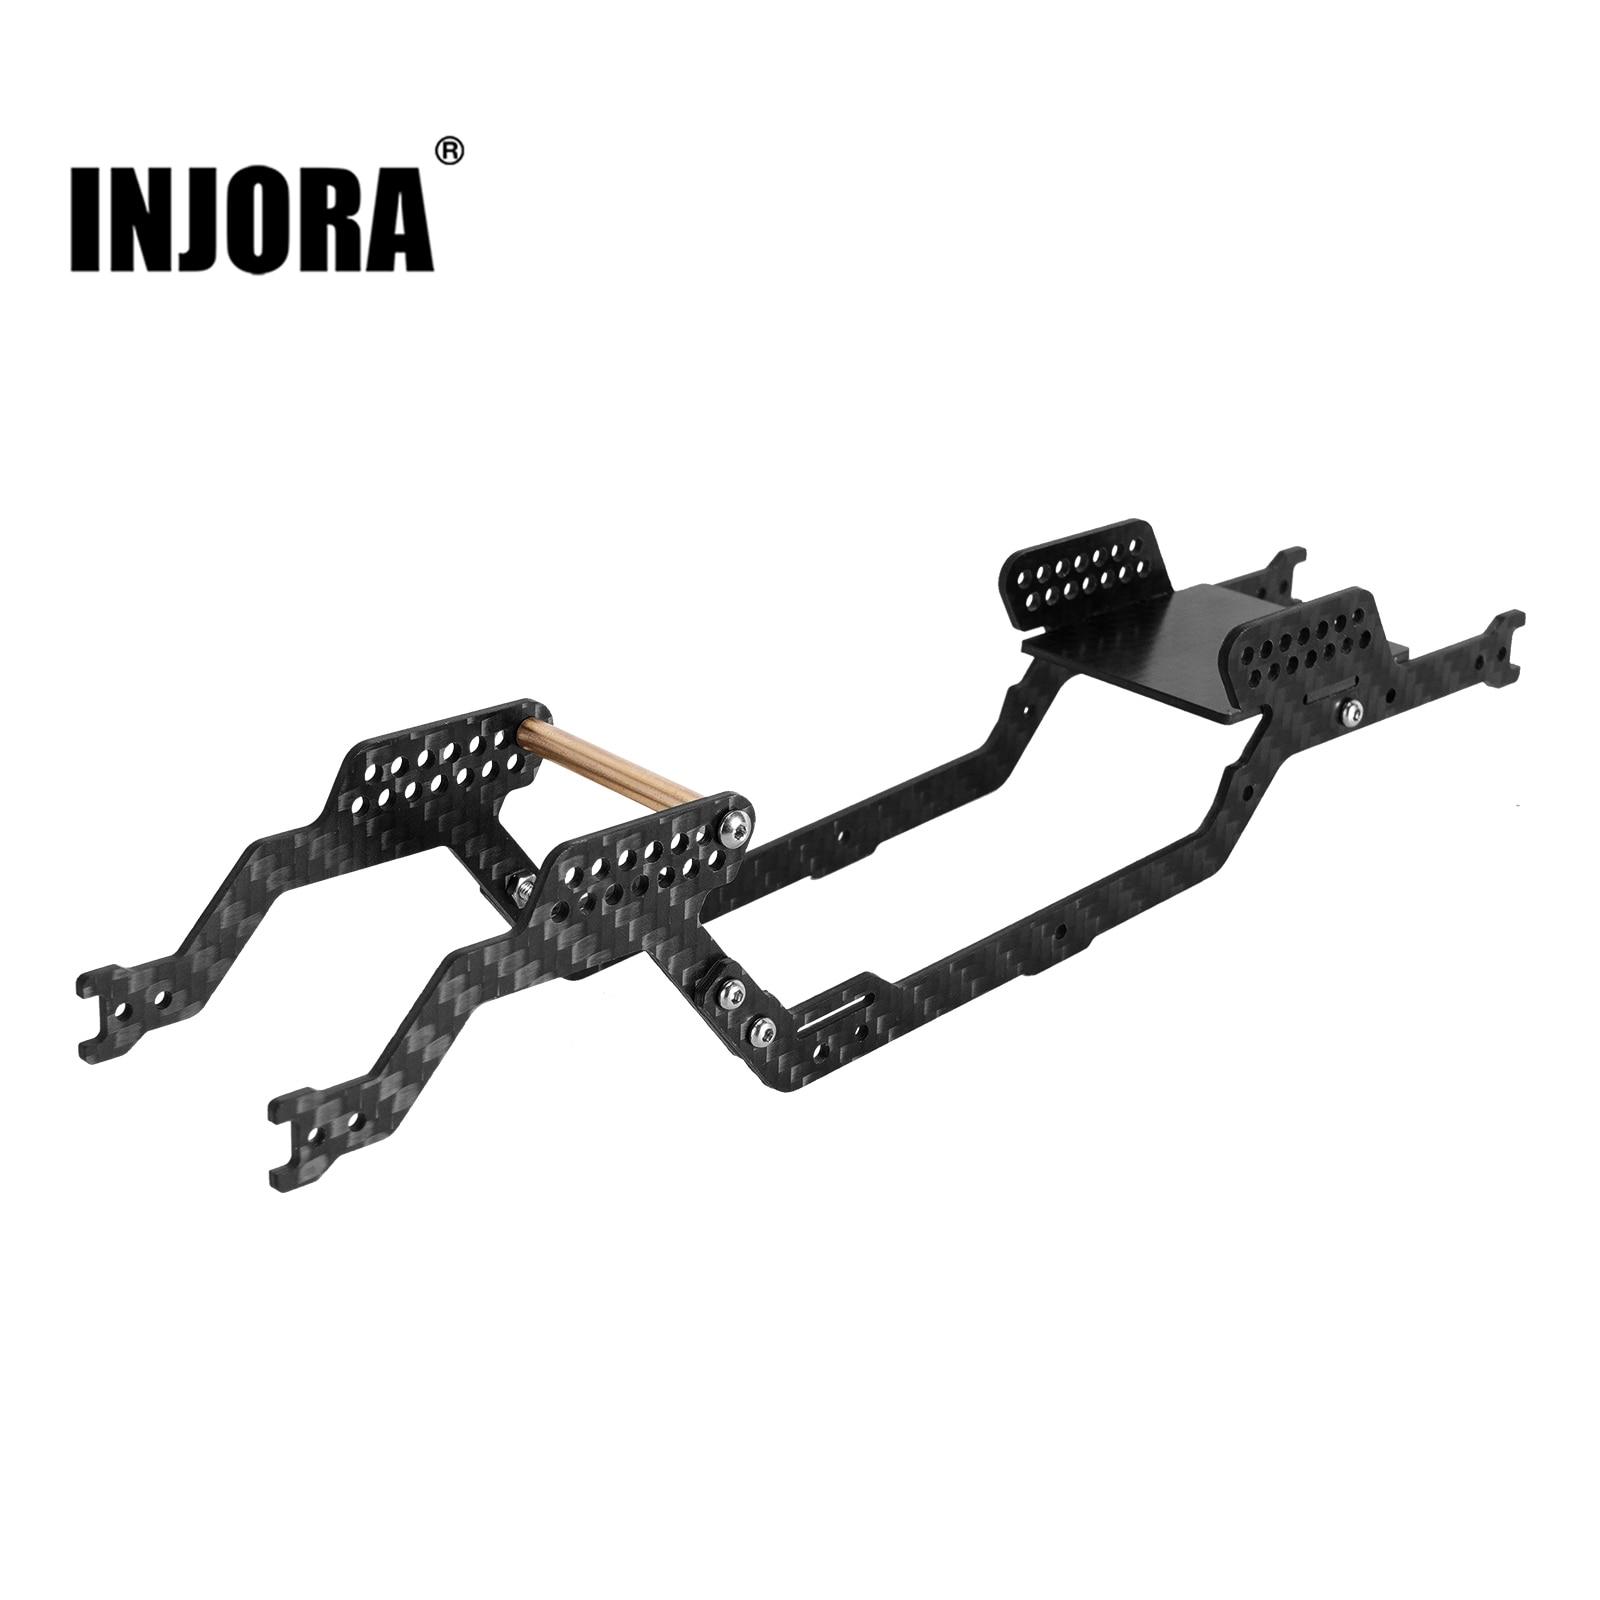 INJORA-LCG-Carbon-Fiber-Chassis-Kit-Frame-Girder-for-1-18-RC-Crawler-TRX4M-Upgrade-4M.jpg